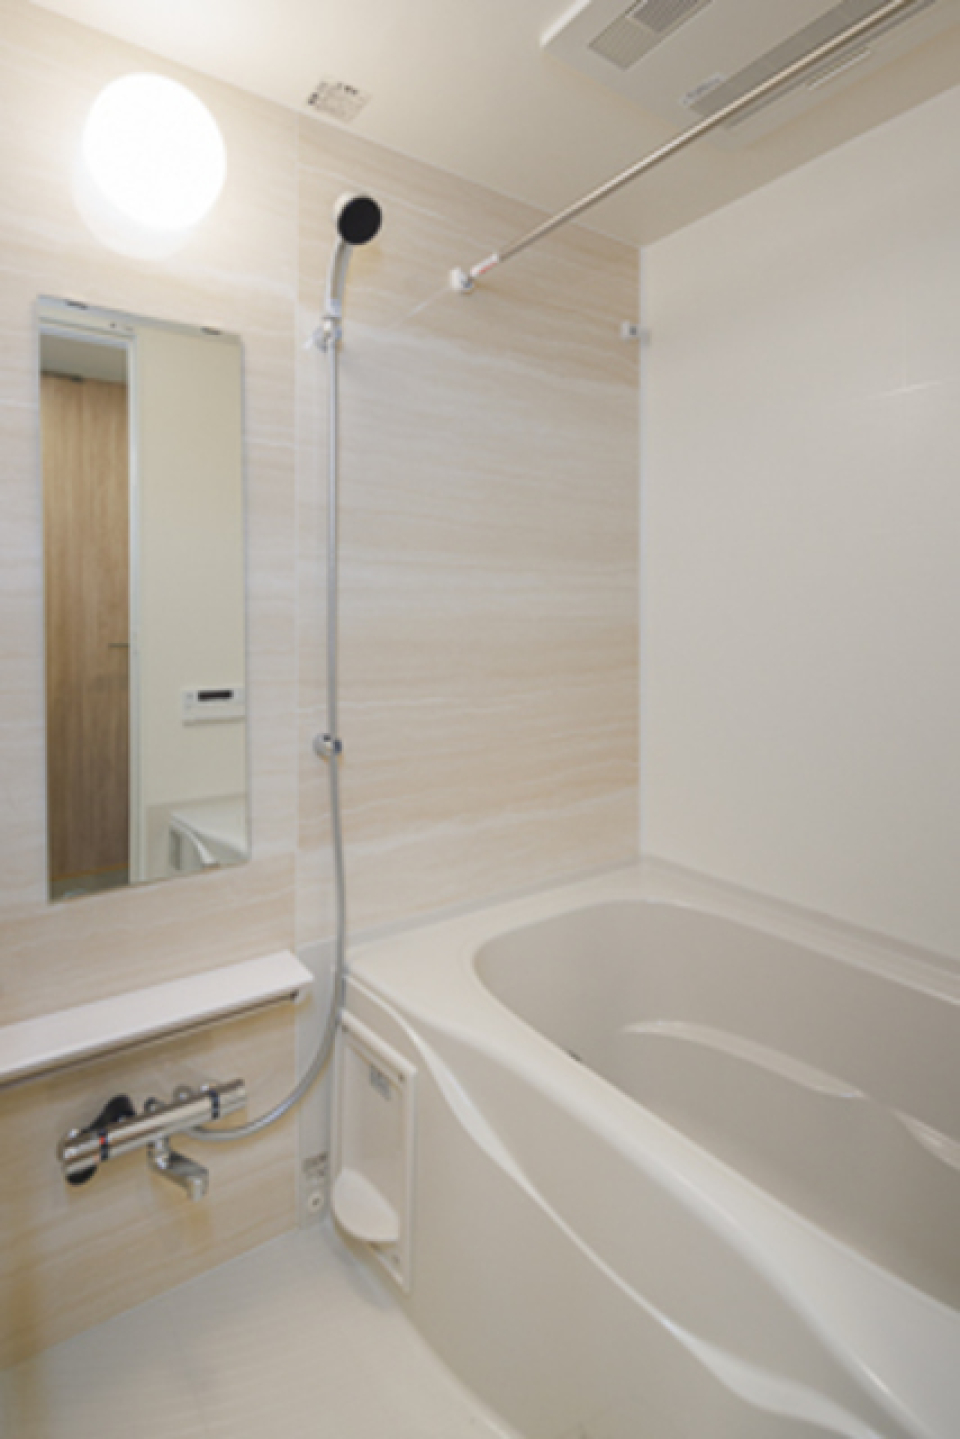 さりげなく木目調のパネルが採用された浴室。※写真は同タイプ住戸です。